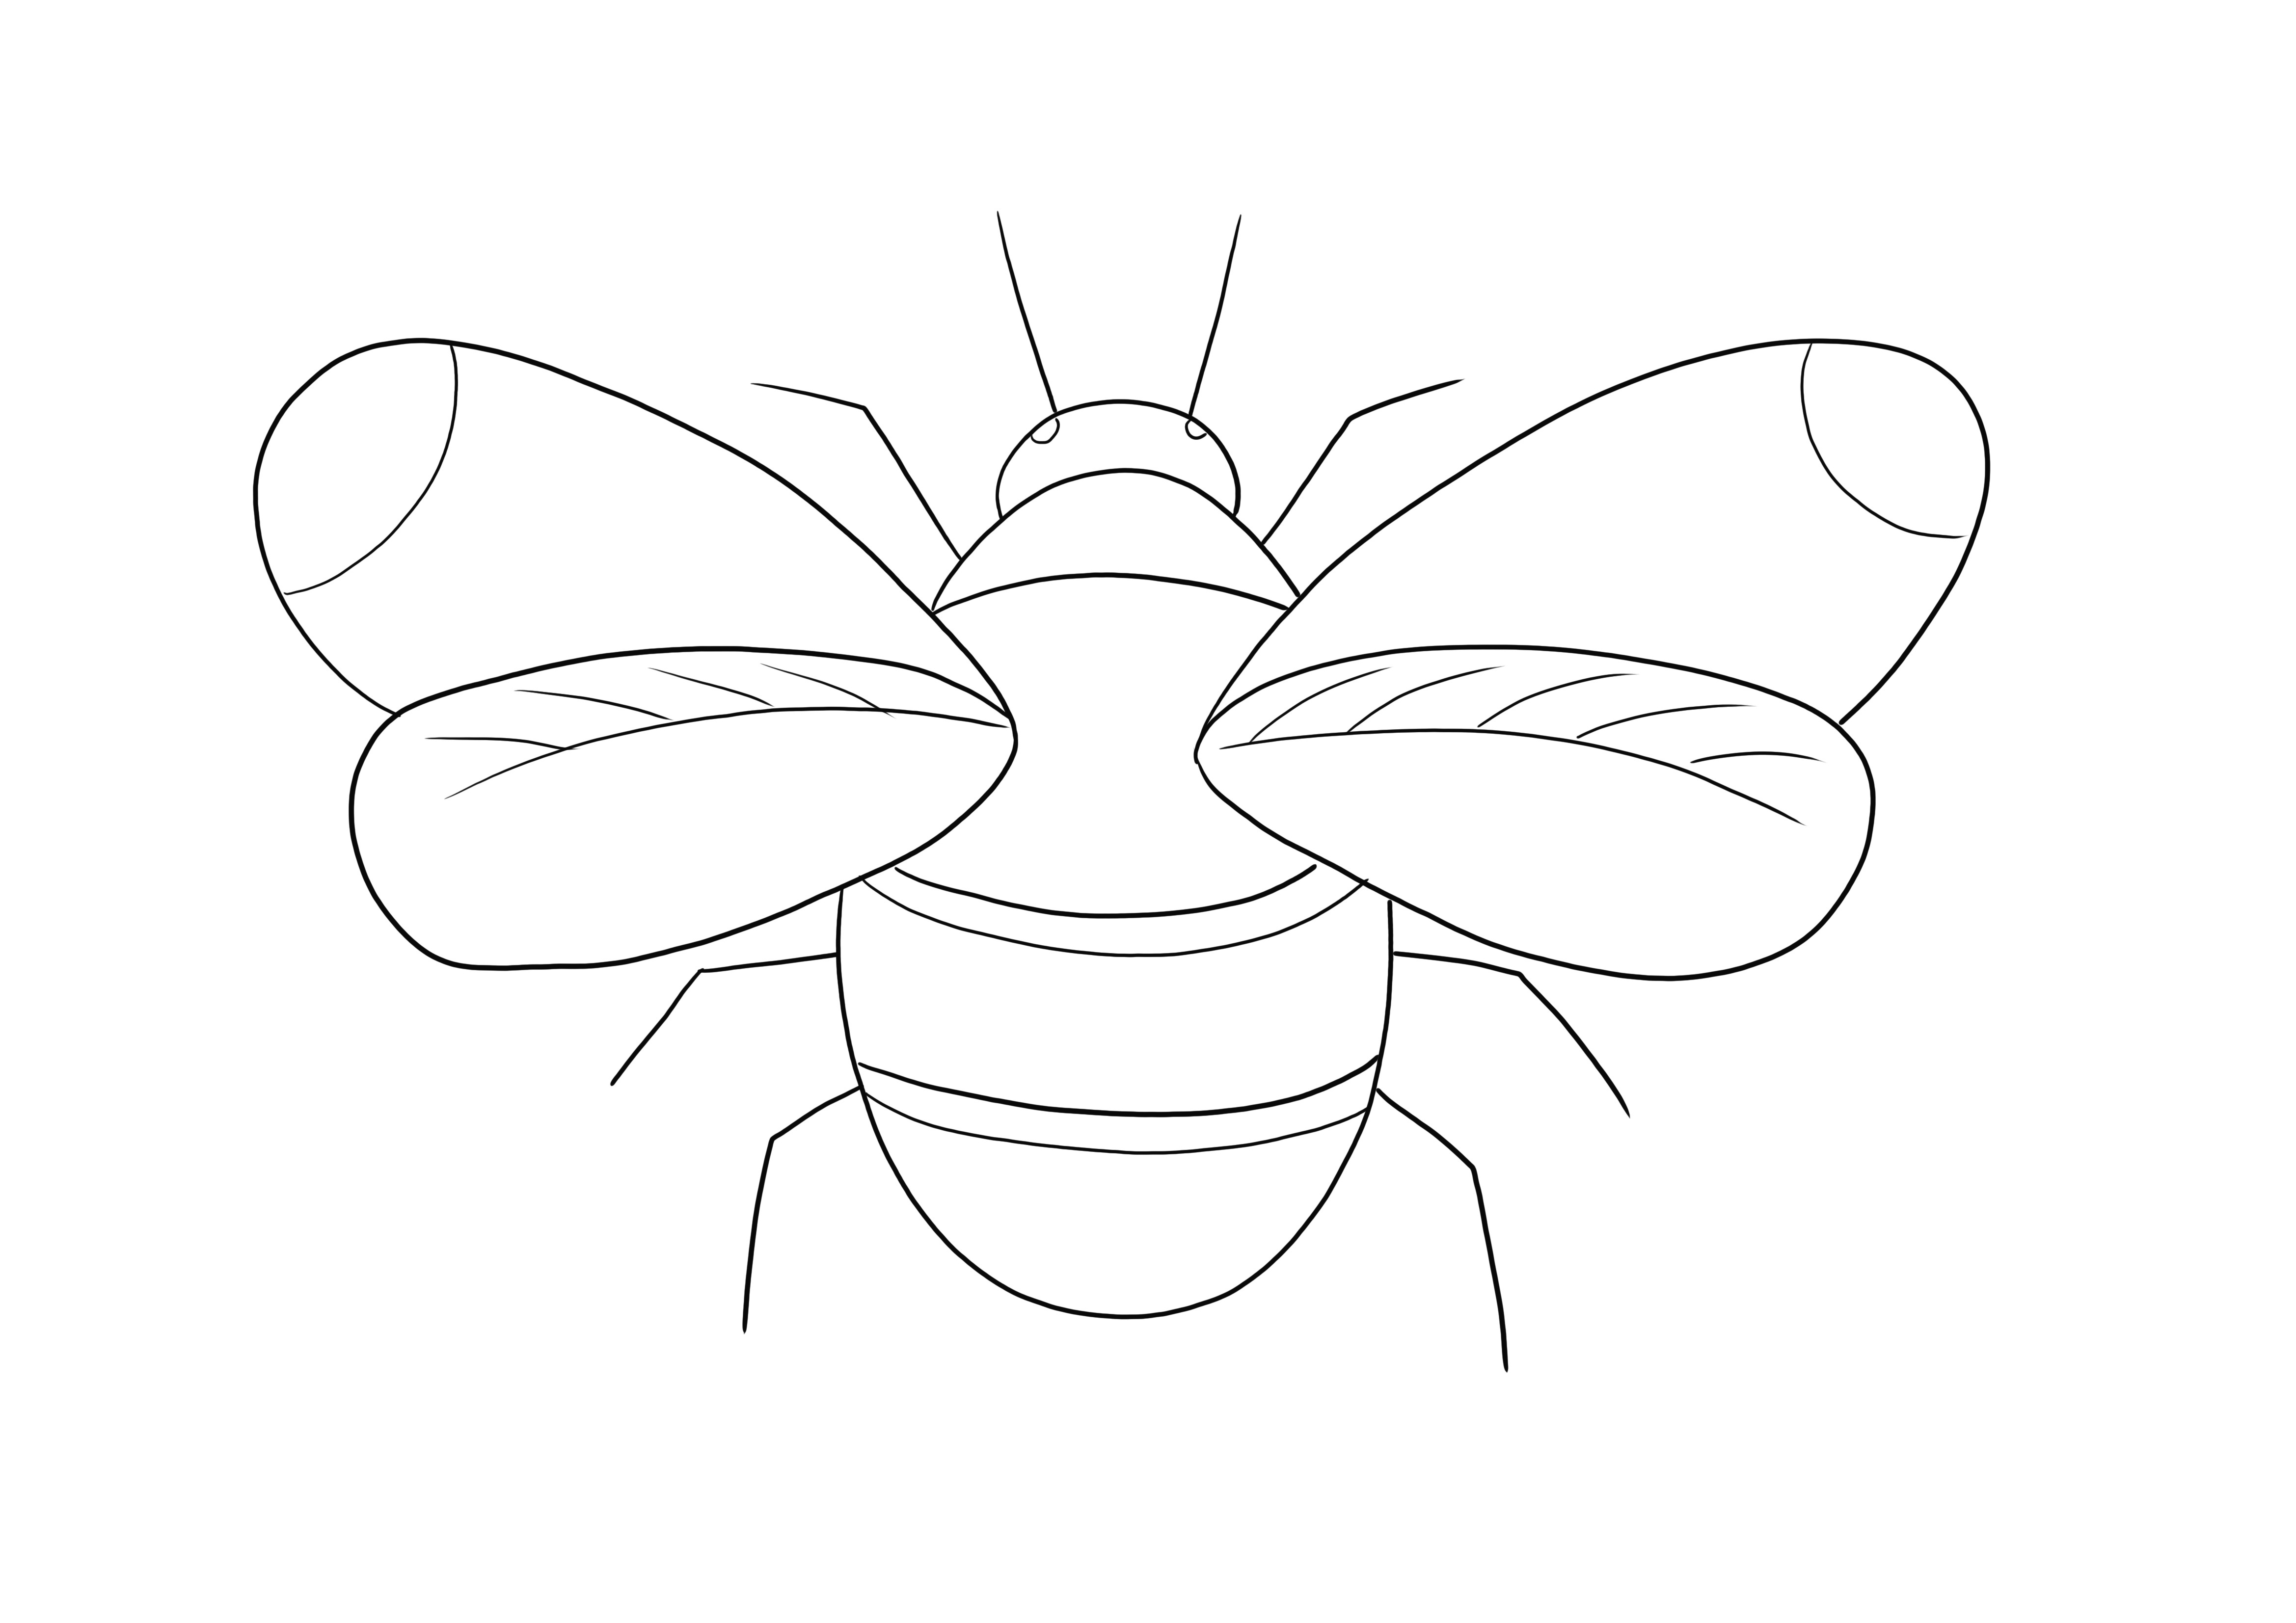 Bumblebee boyama sayfasının indirilmesi veya yazdırılması ve renklendirilmesi ücretsizdir.